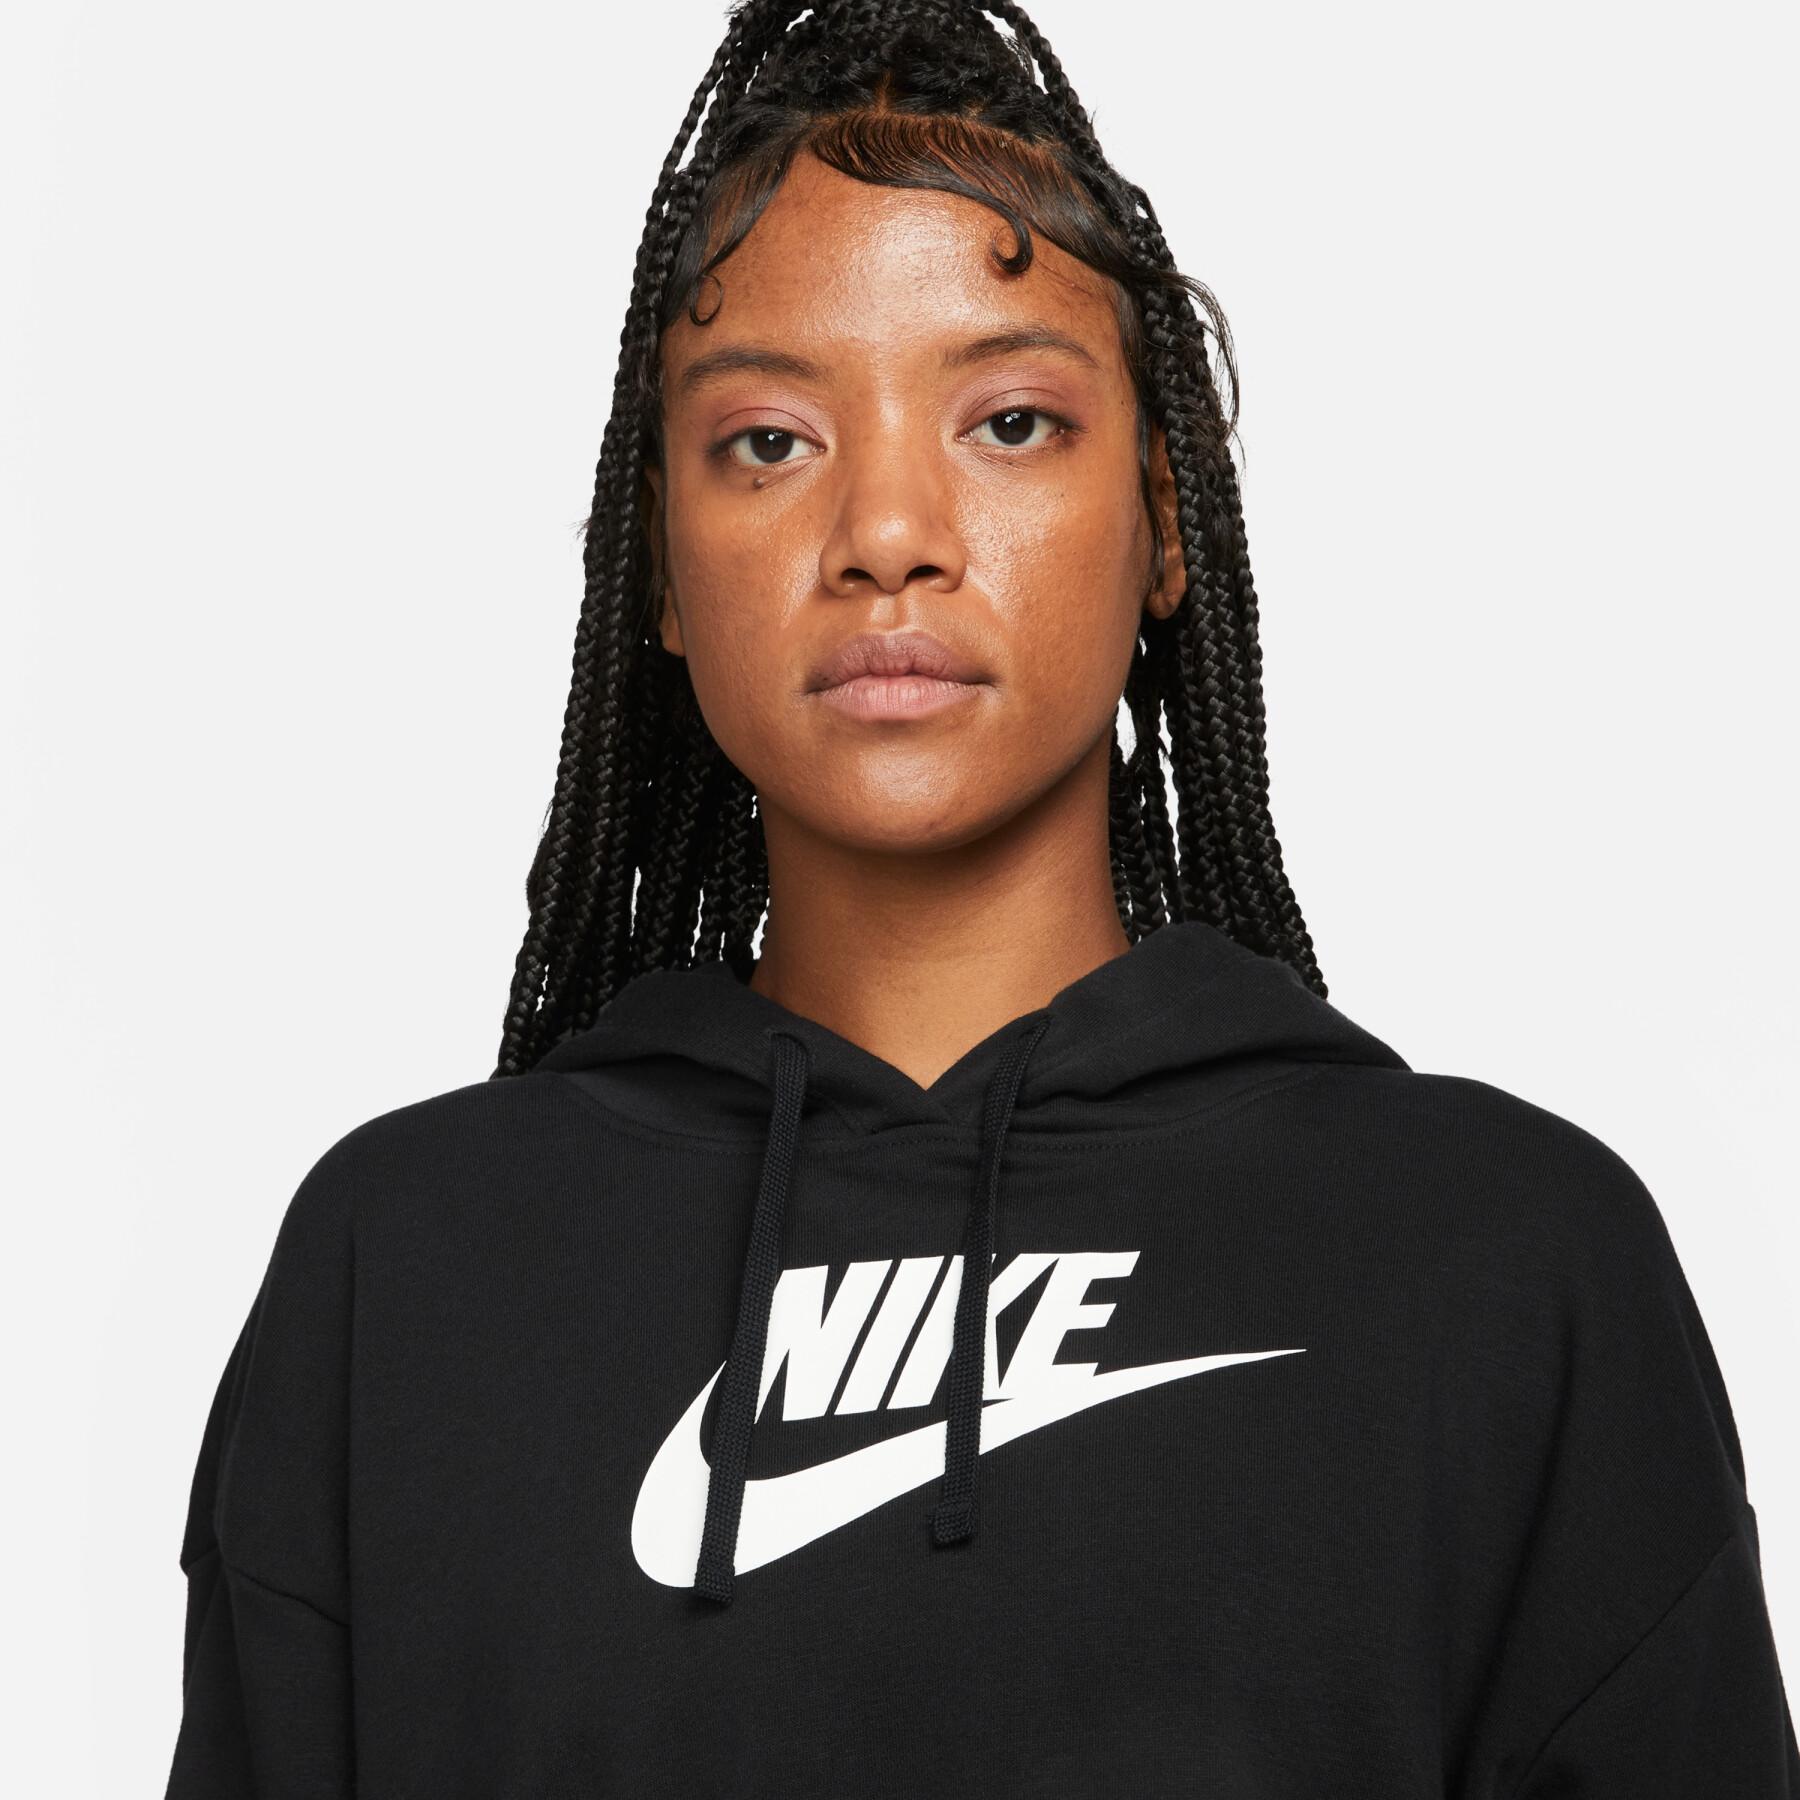 Women's hooded sweatshirt Nike Sportswear Club Gx